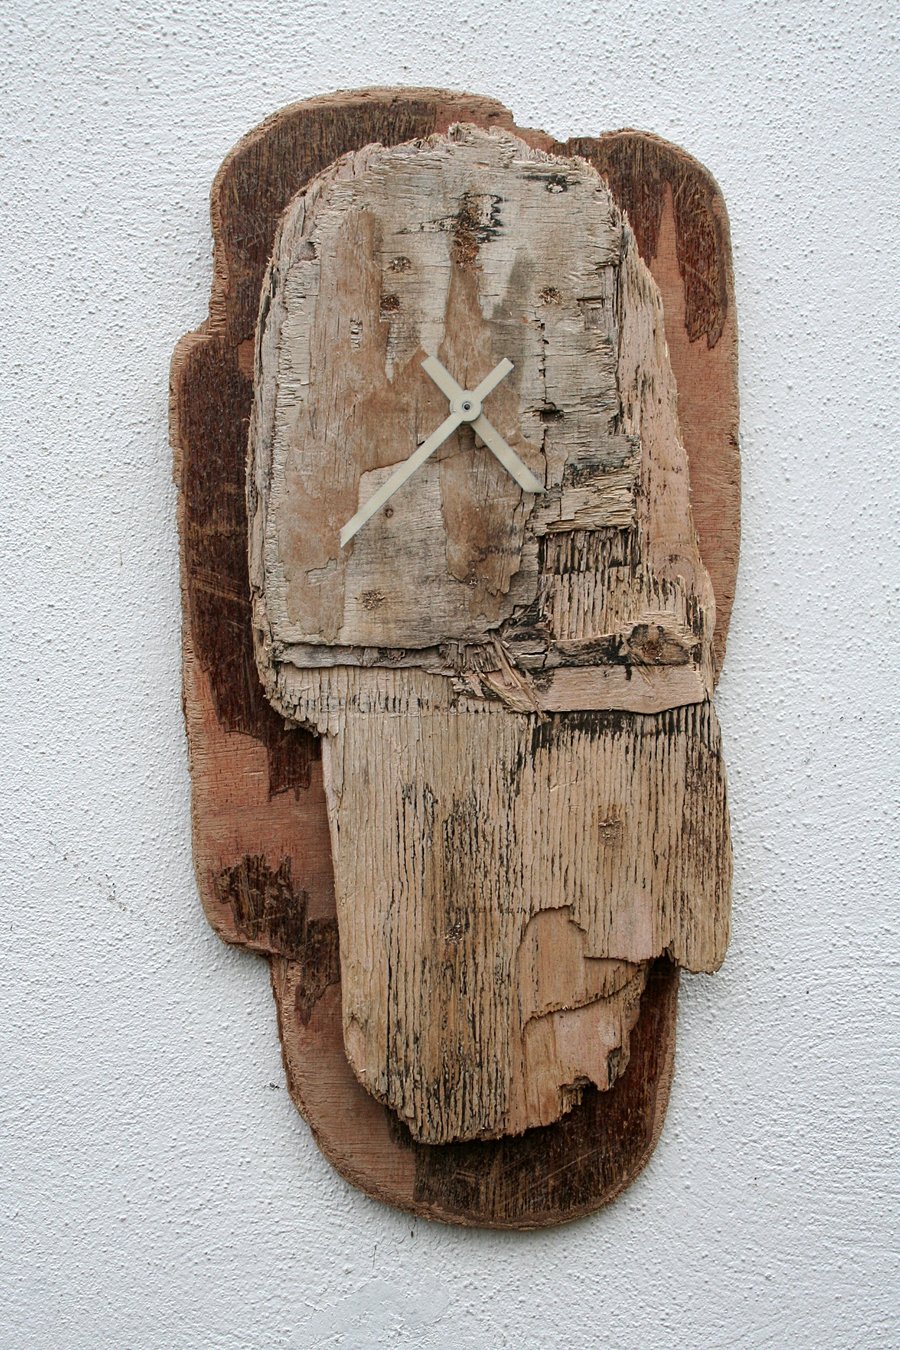 Driftwood Clock,Driftwood wall Clock, Drift Wood Clock, Driftwood Cornwall UK